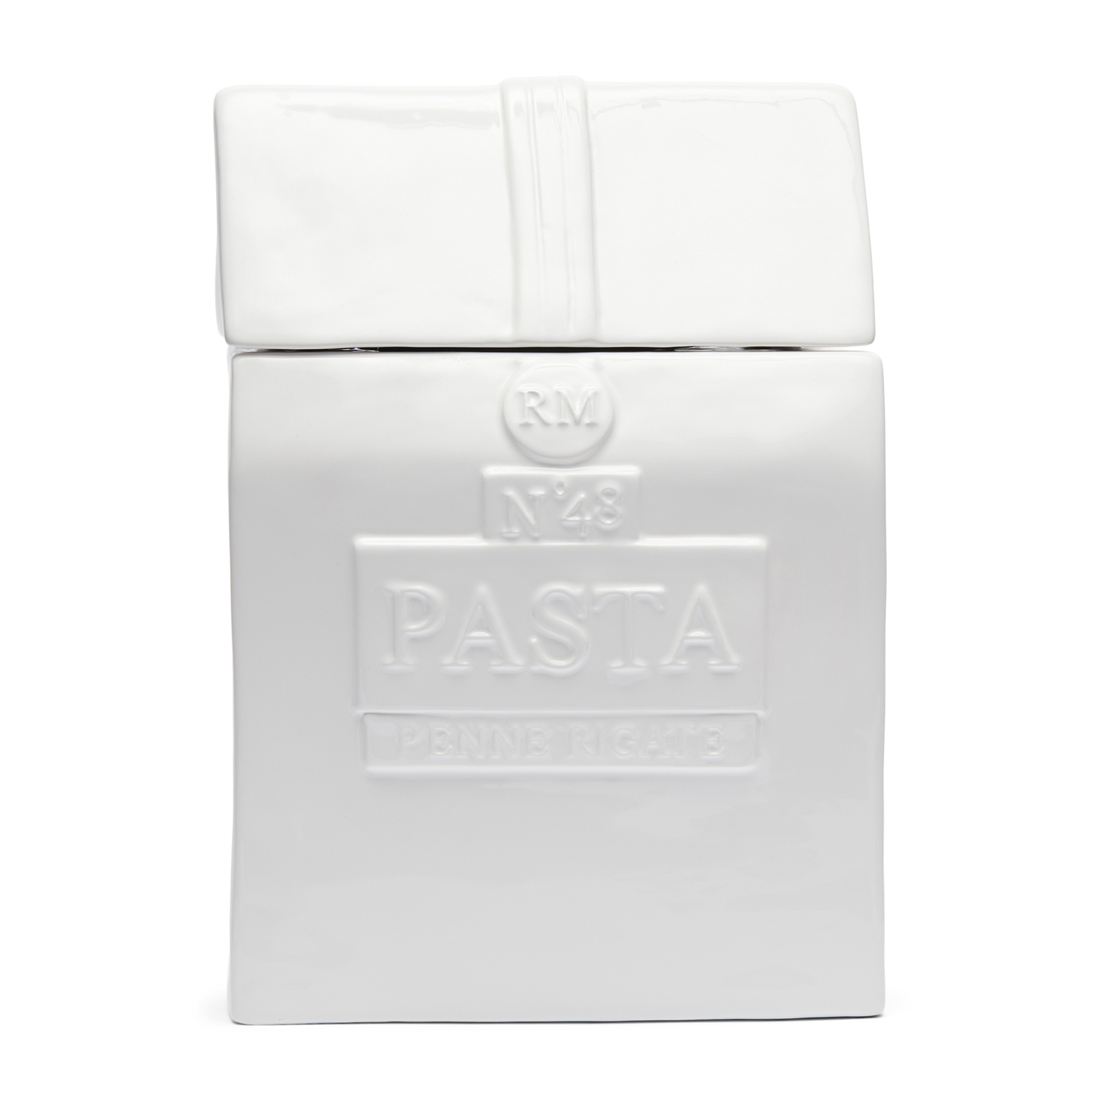 Riviera Maison Voorraadpot met deksel, Vershoudpot Pasta - Pasta Storage Jar - Wit - Porselein